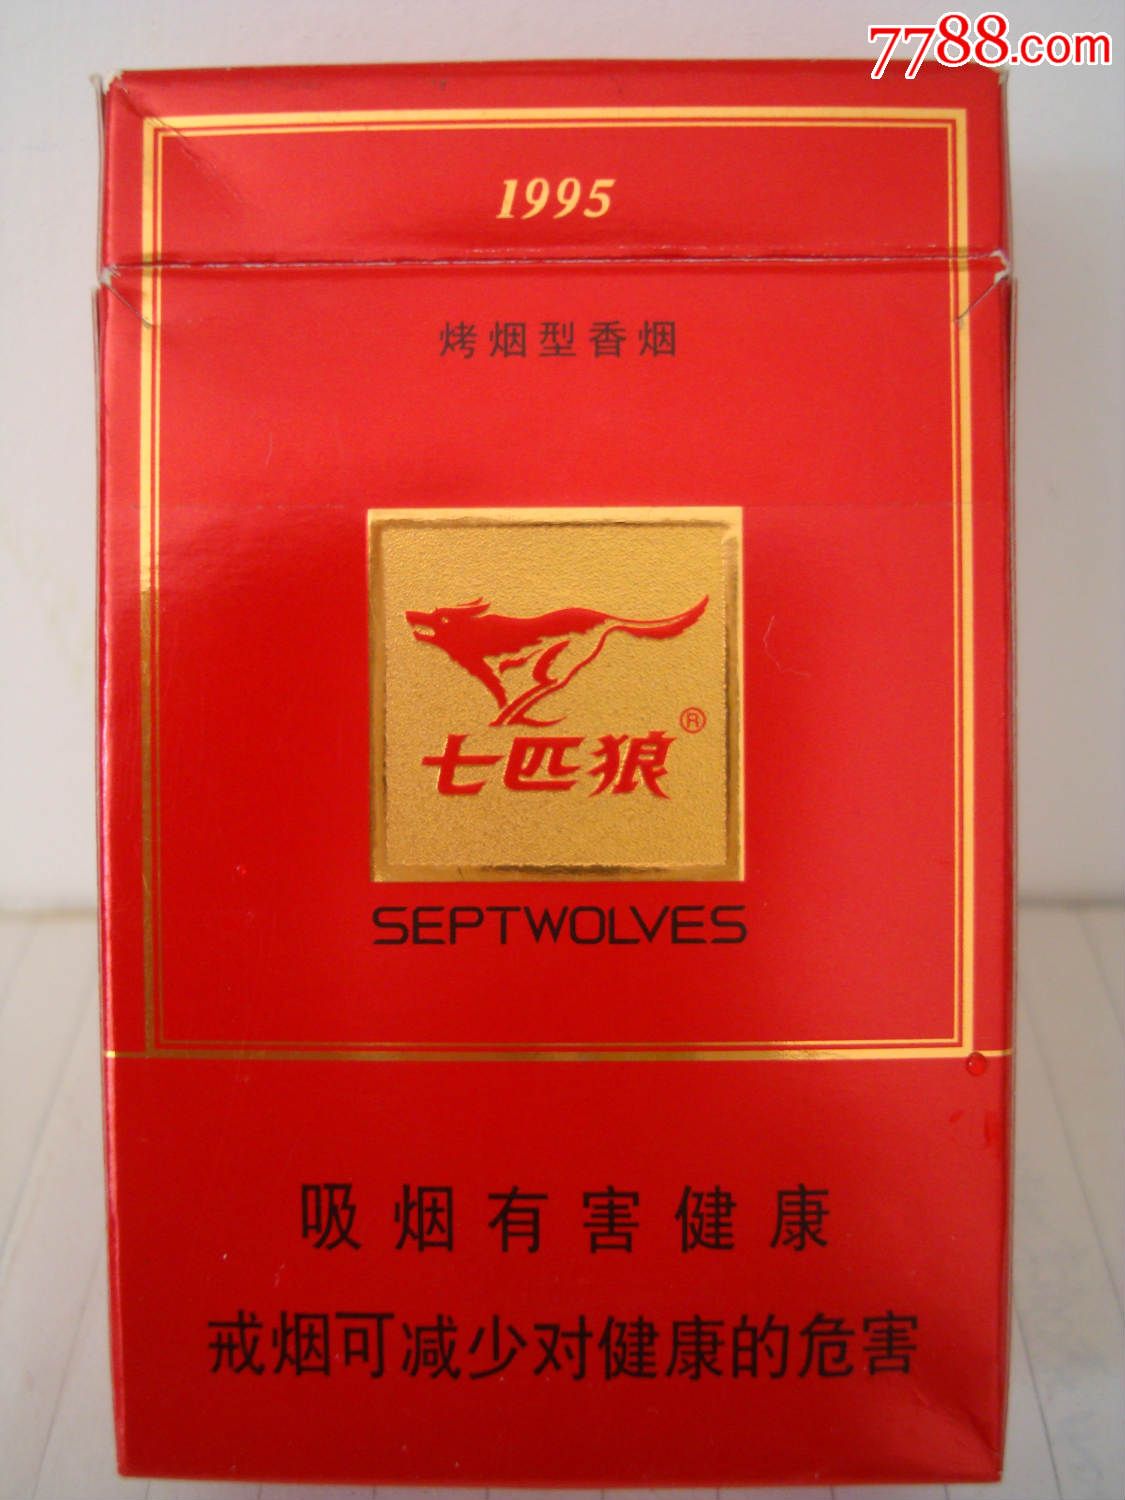 七匹狼――1995